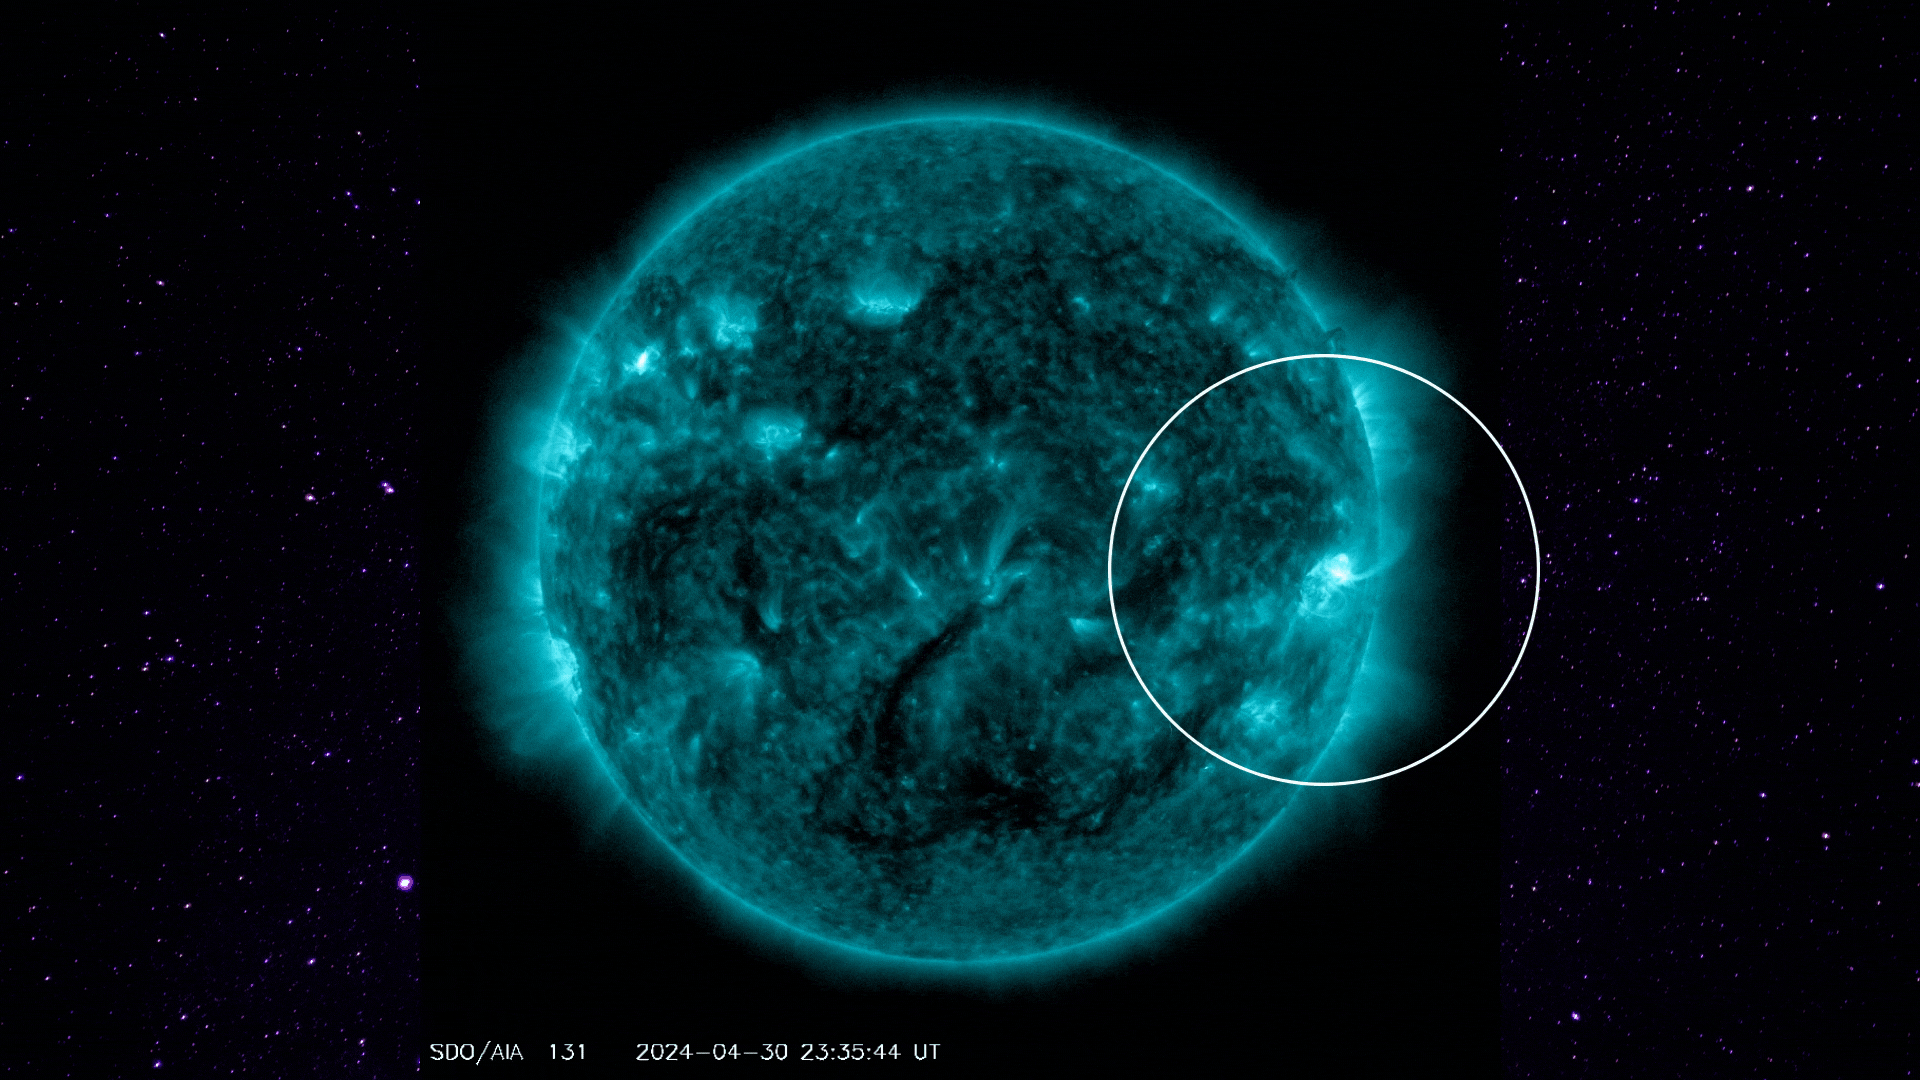 Ήλιος εκρήγνυται κοντά σε ηλιακή έκλαμψη κατηγορίας X – Η έκρηξη M9.5 προκαλεί διακοπές ρεύματος στον Ειρηνικό (Βίντεο)